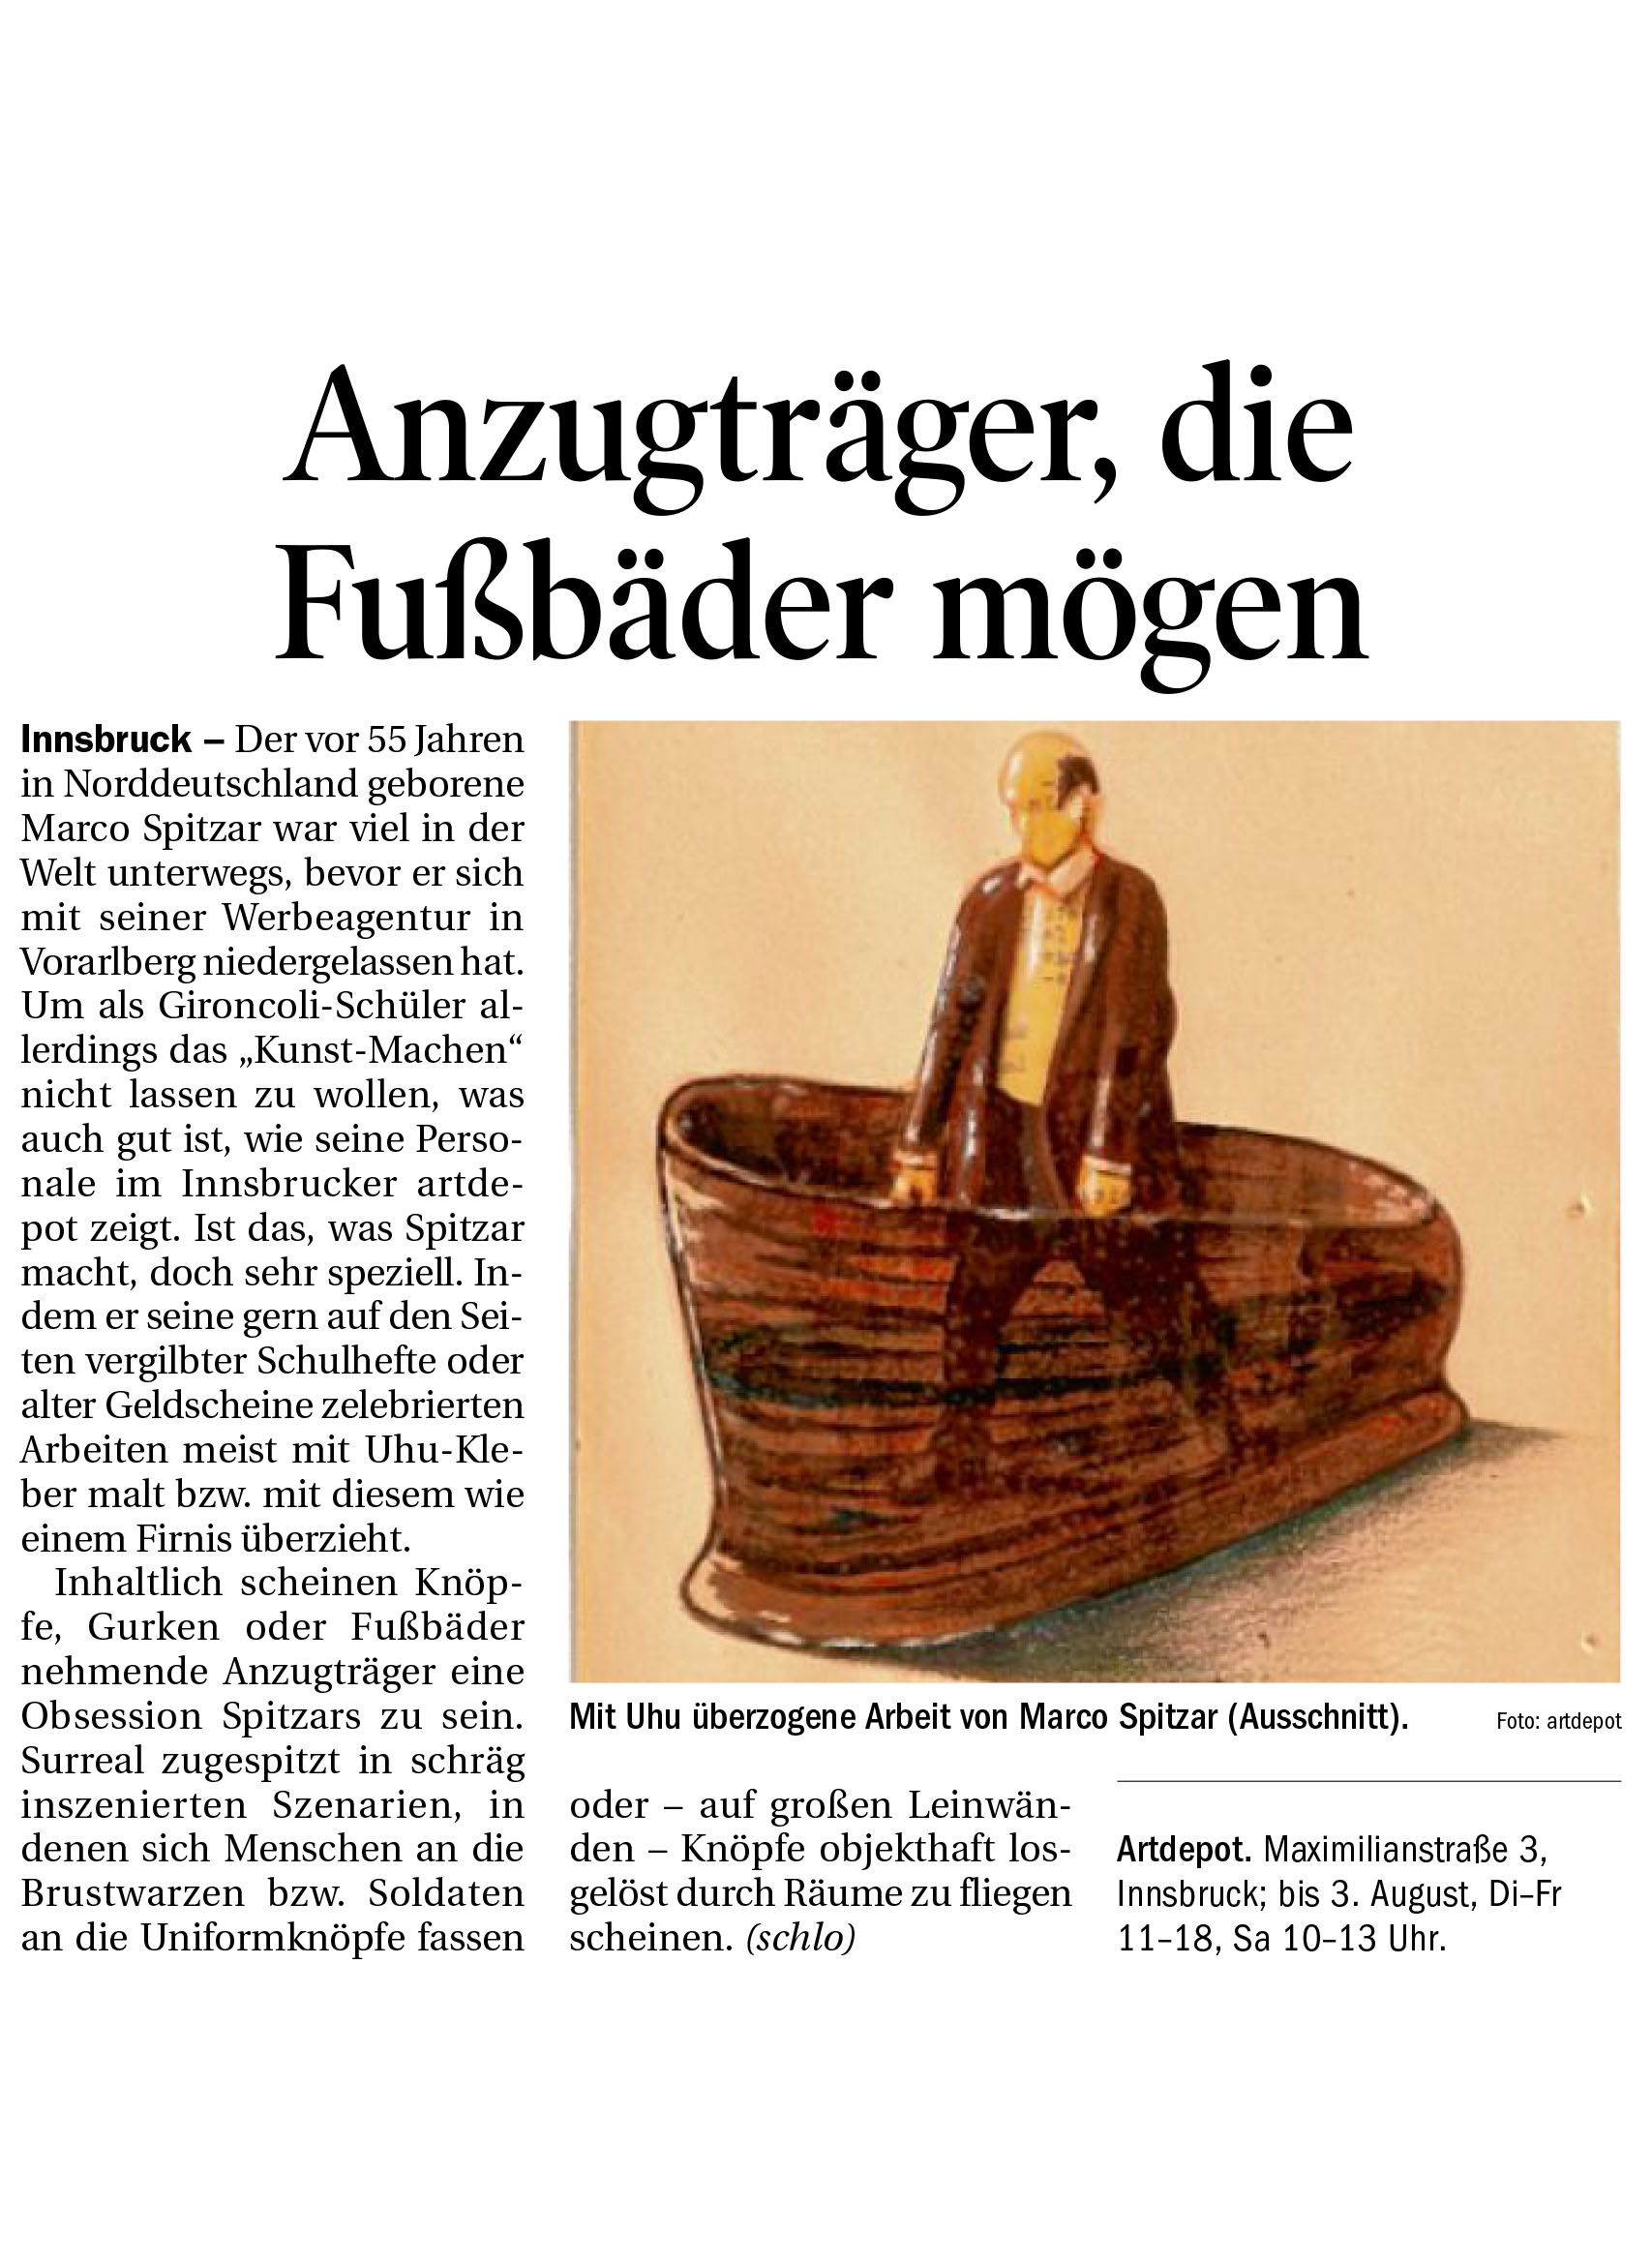 Tiroler-Tageszeitung_Uhuismus_Artdepot_190716